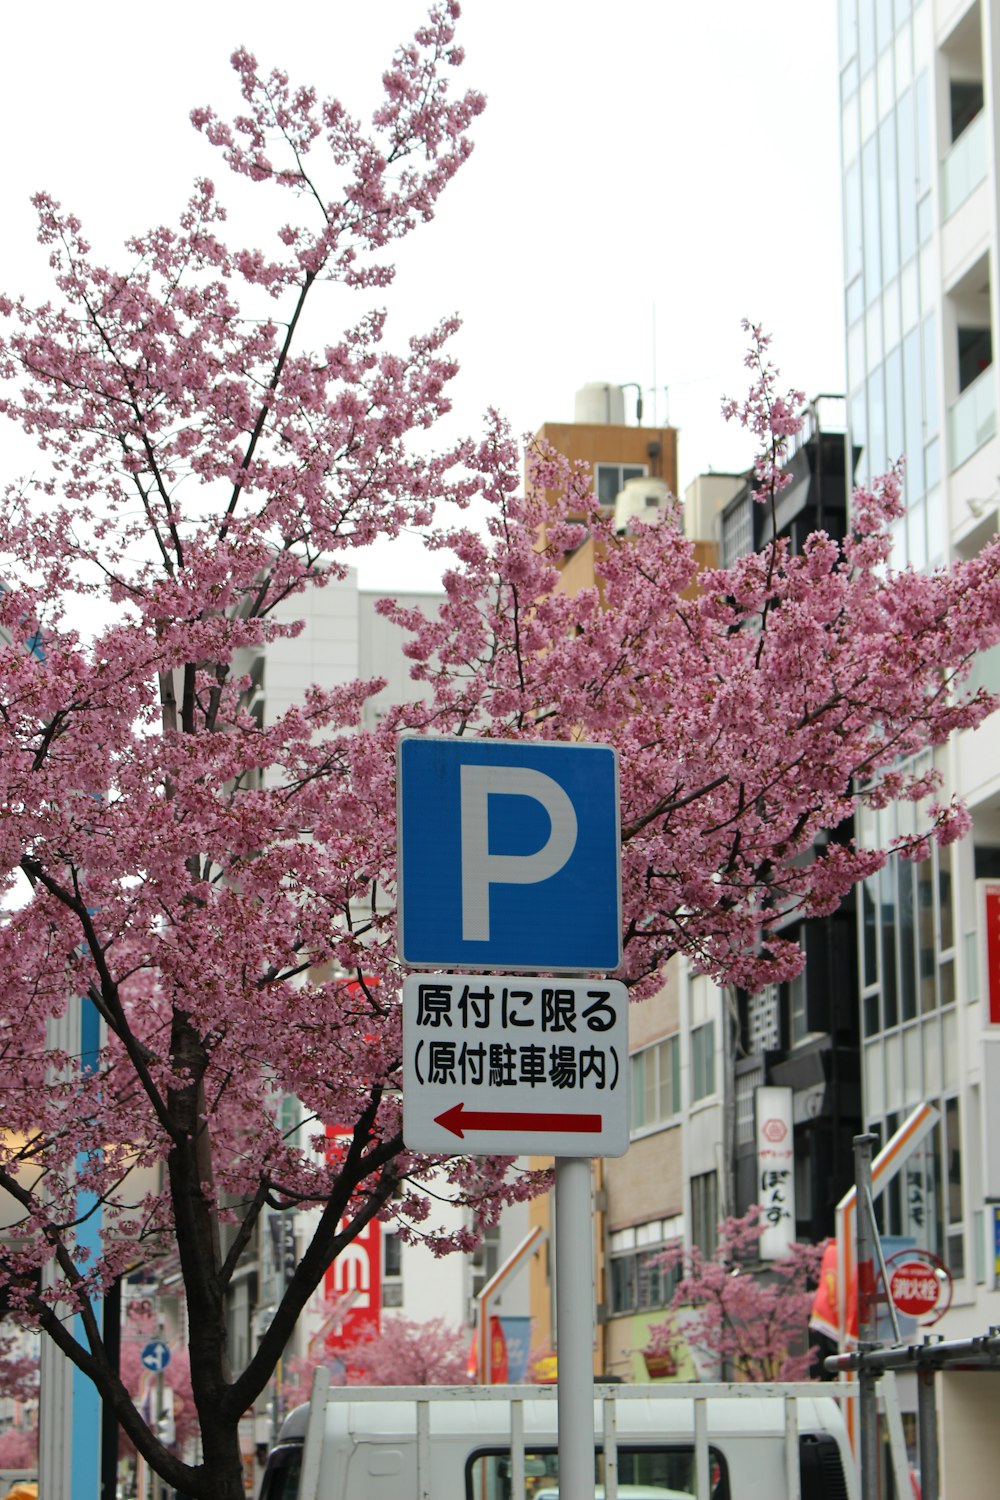 una señal de estacionamiento azul al costado de una carretera